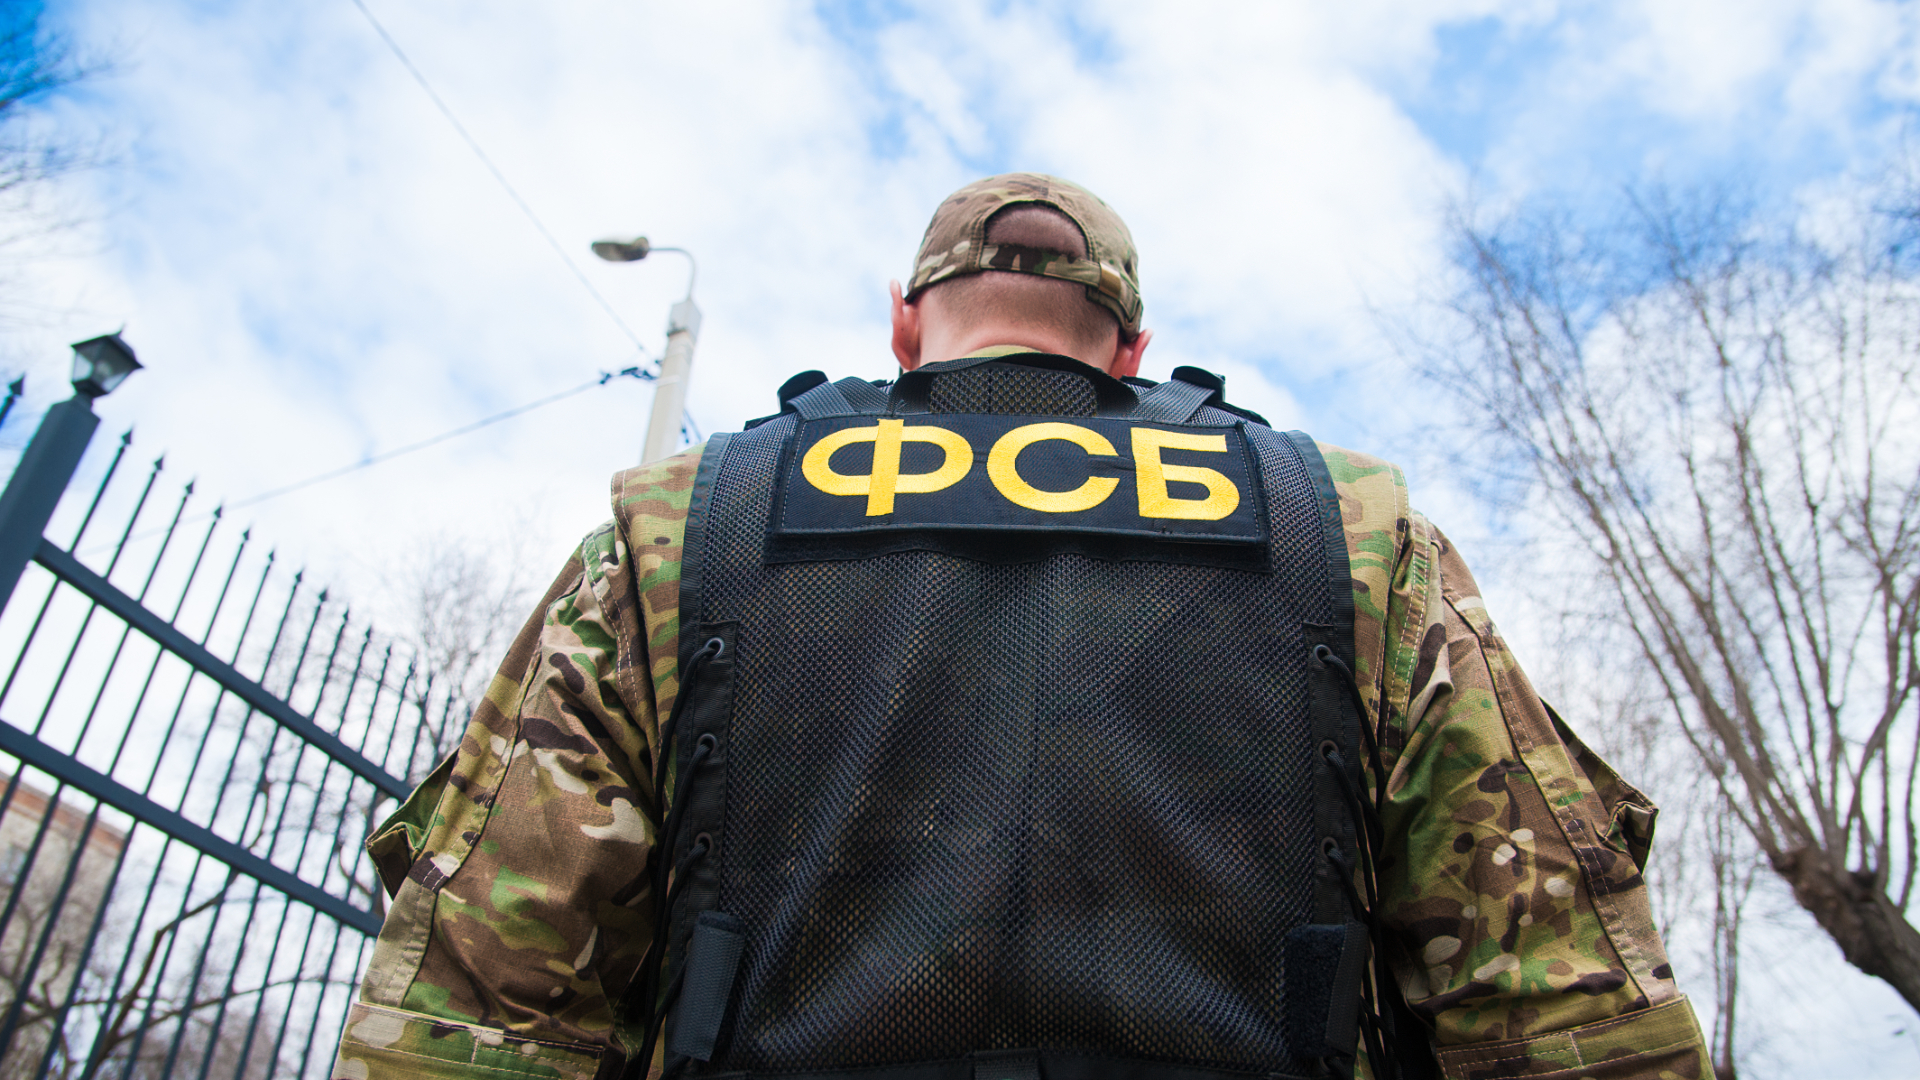 ФСБ поймали ростовчанина на передаче данных Украине о военном объекте